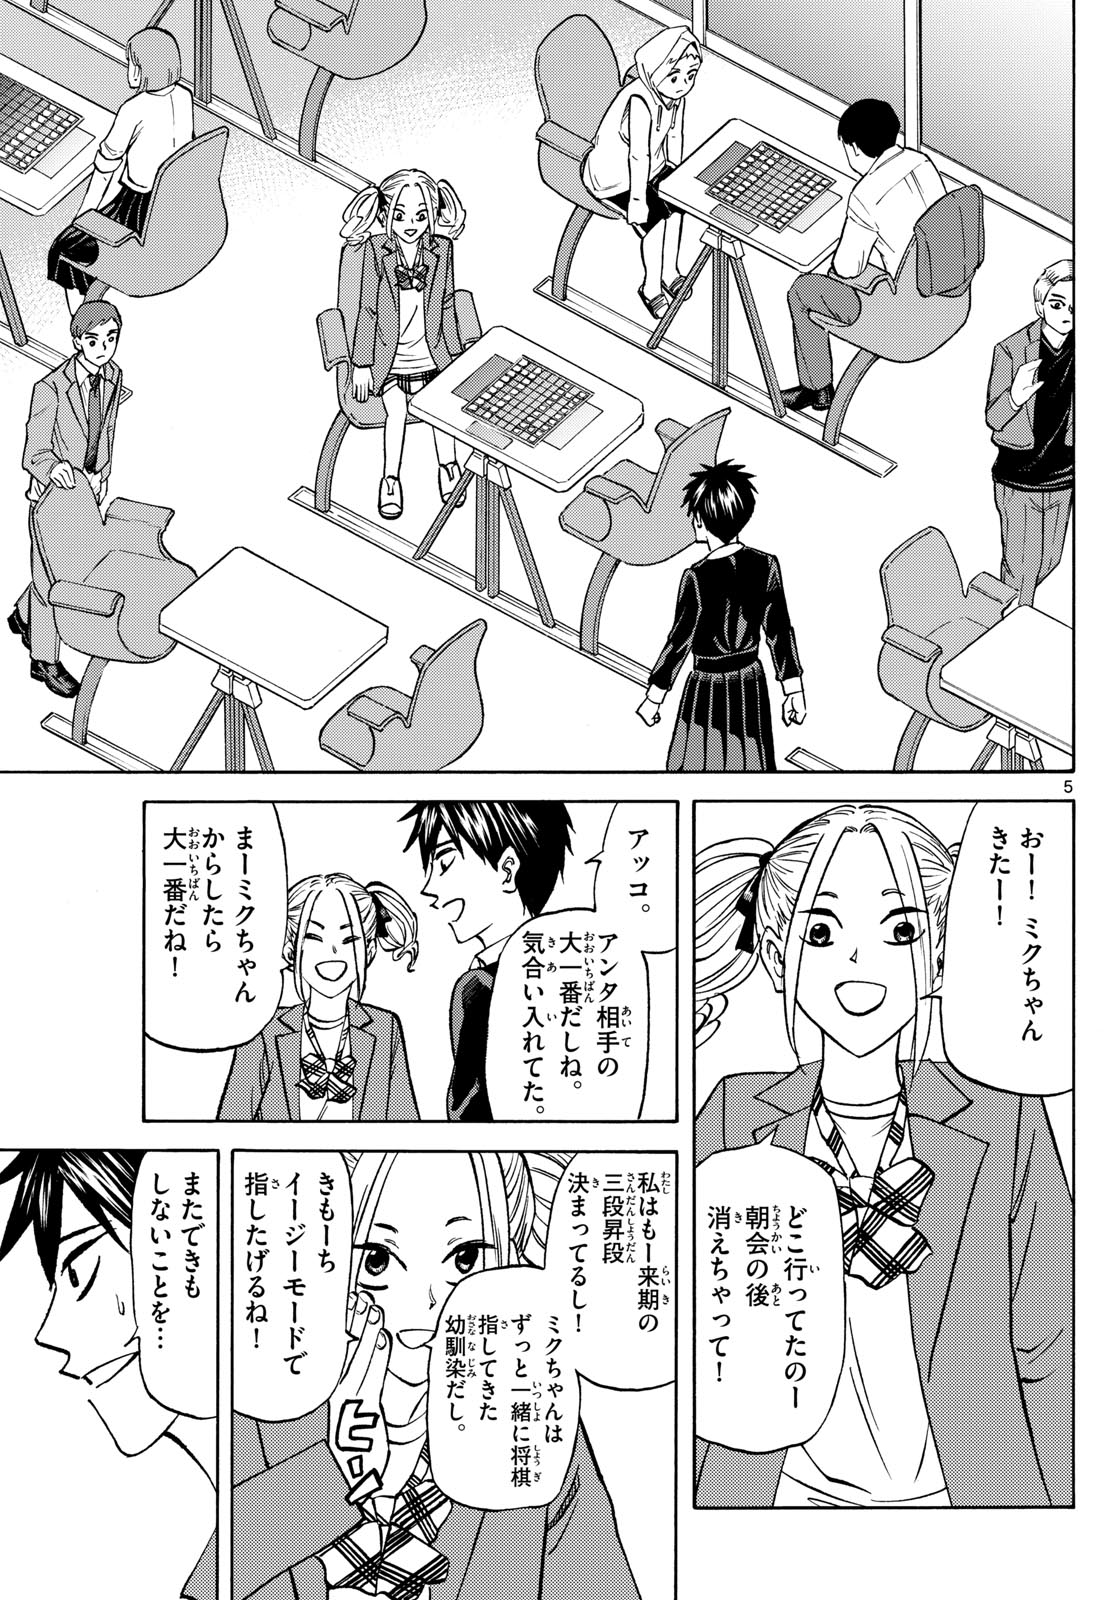 Tatsu to Ichigo - Chapter 181 - Page 5